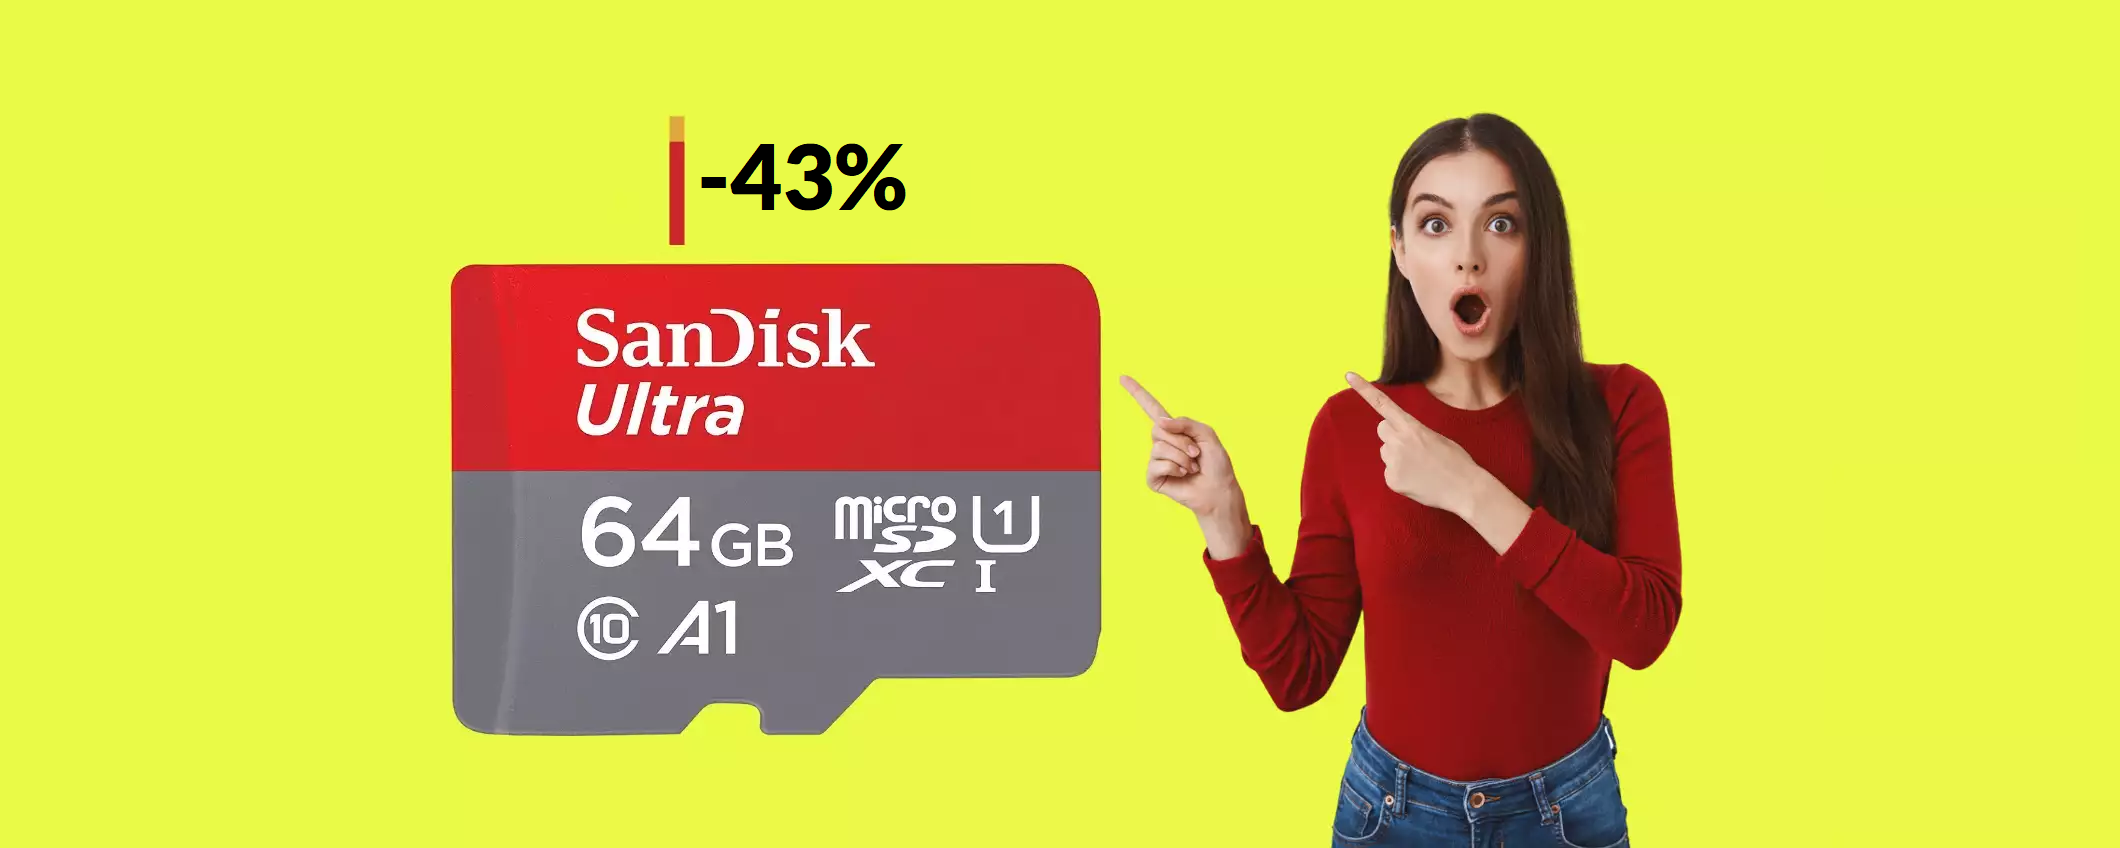 Una strabiliante microSD SanDisk può essere tua con appena 10€